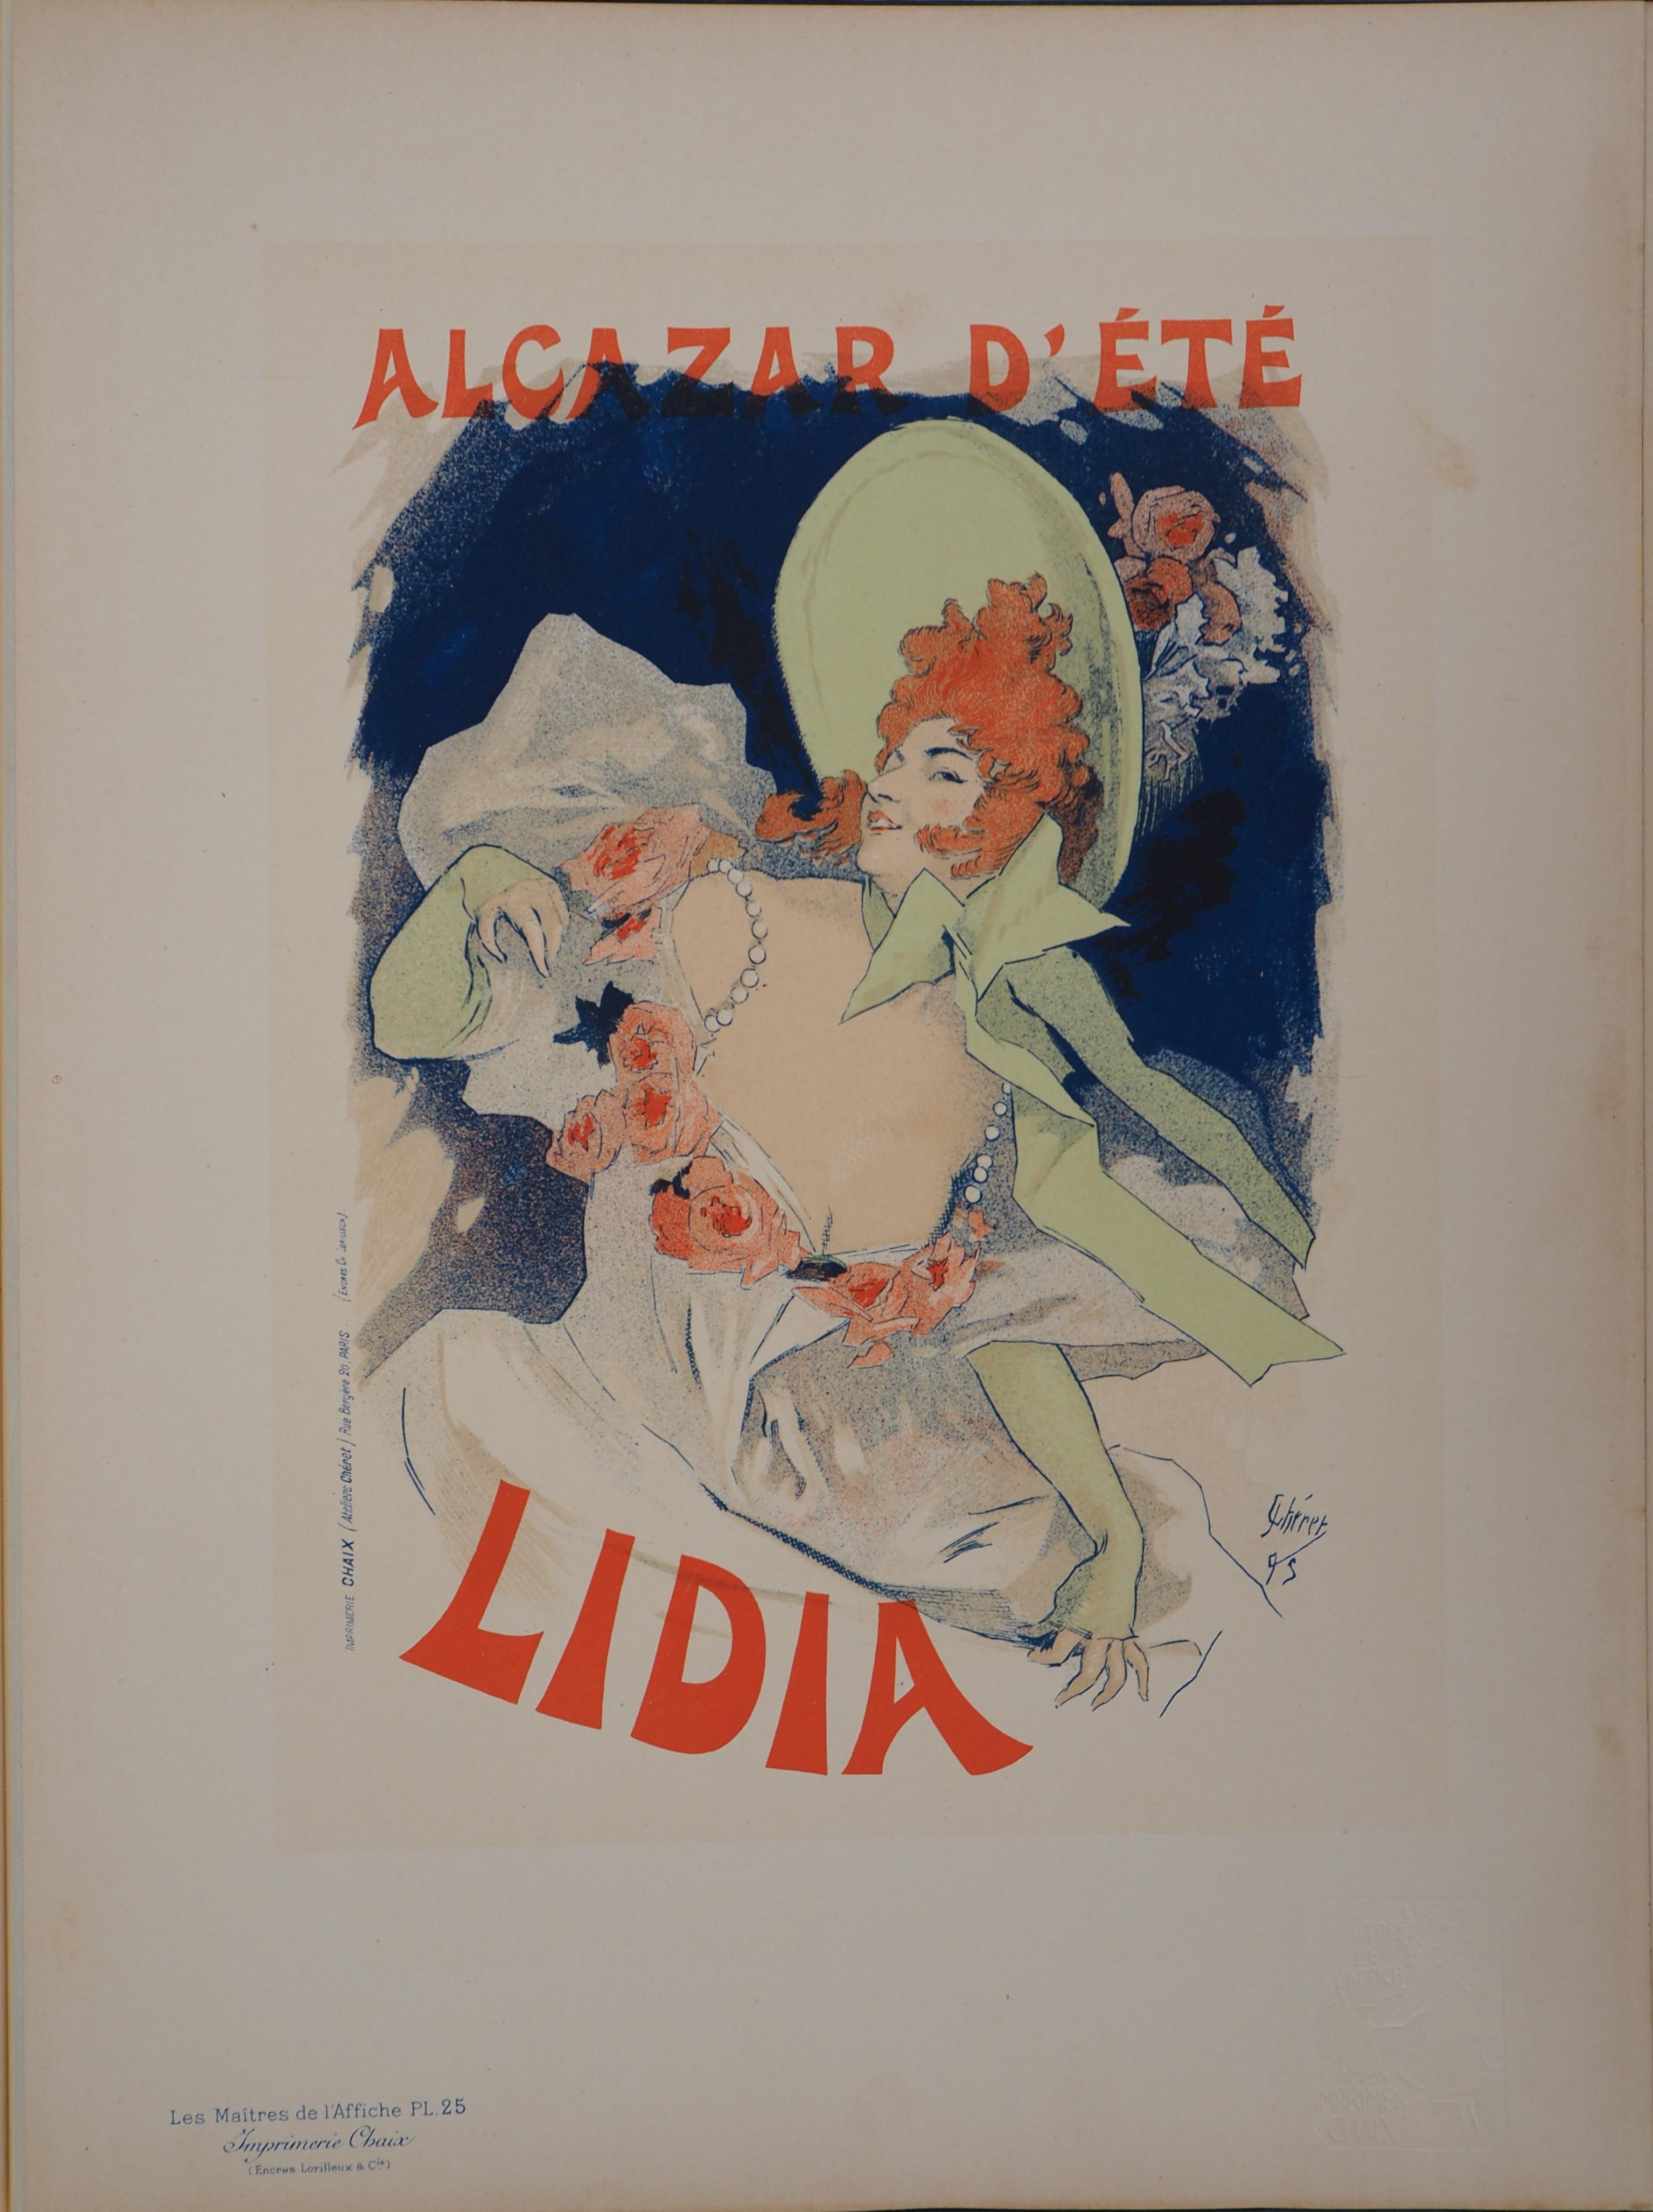 Lidia - Lithograph (Les Maîtres de l'Affiche), 1895 - Print by Jules Chéret